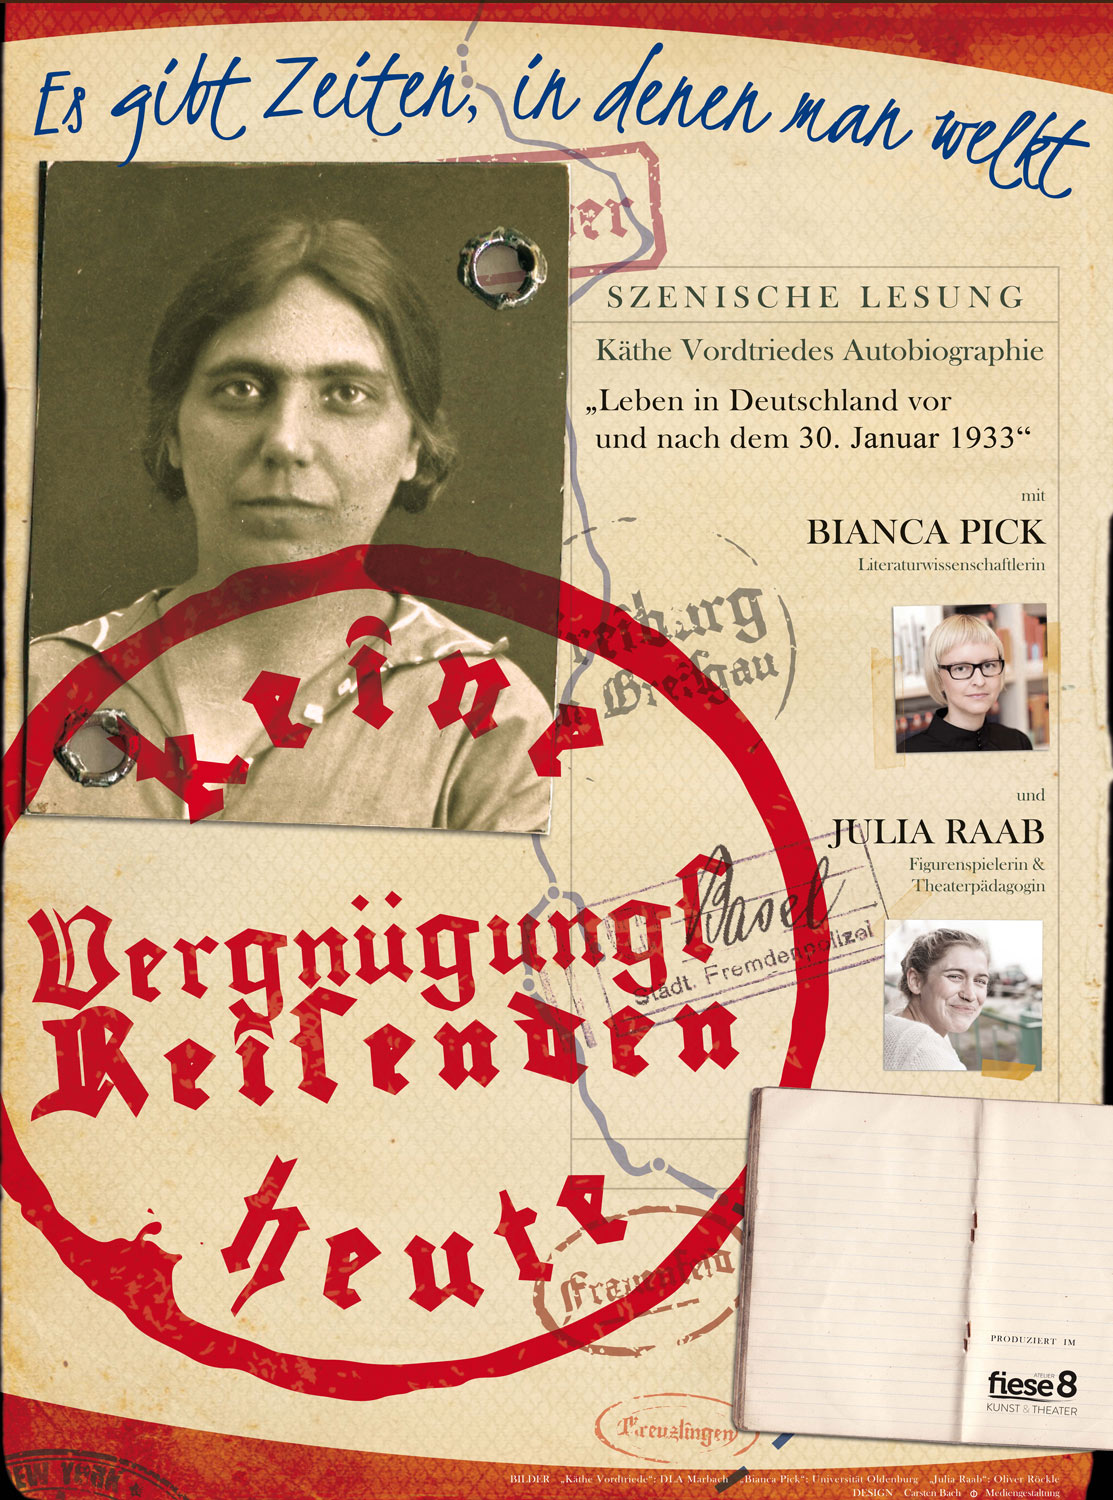 Plakat der szenischen Lesung 'Es gibt Zeiten, in denen man welkt' von Figurenspielerin Julia Raab & Literaturwissenschaftlerin Bianca Pick über die gleichnamige Autobiographie von Käthe Vordtriede.